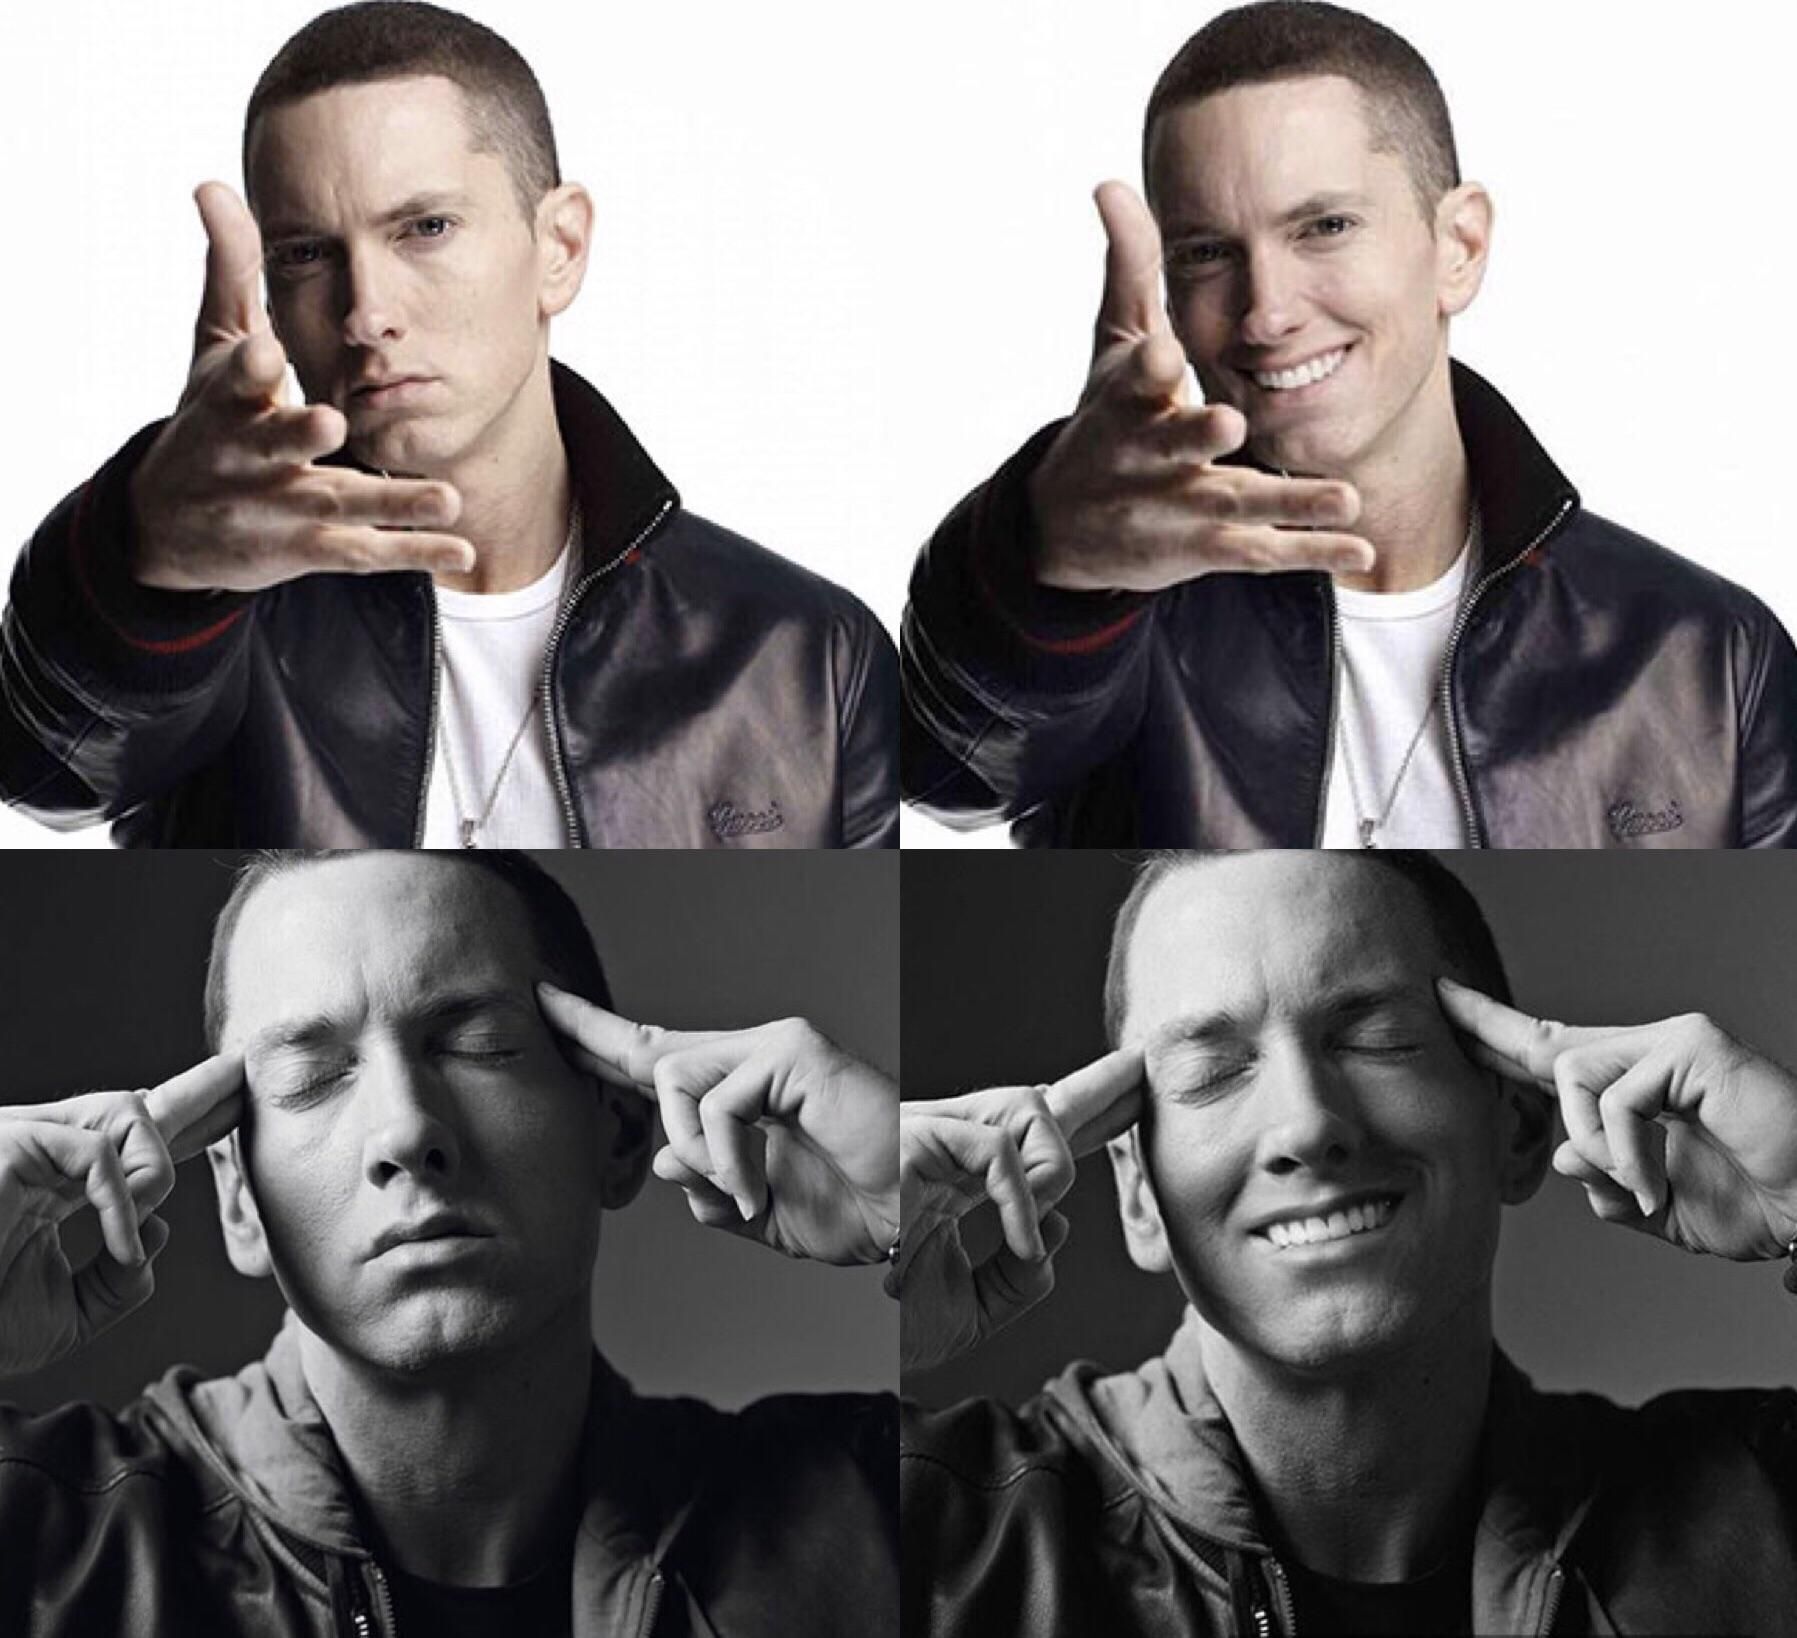 This guy photoshops smiles onto Eminem